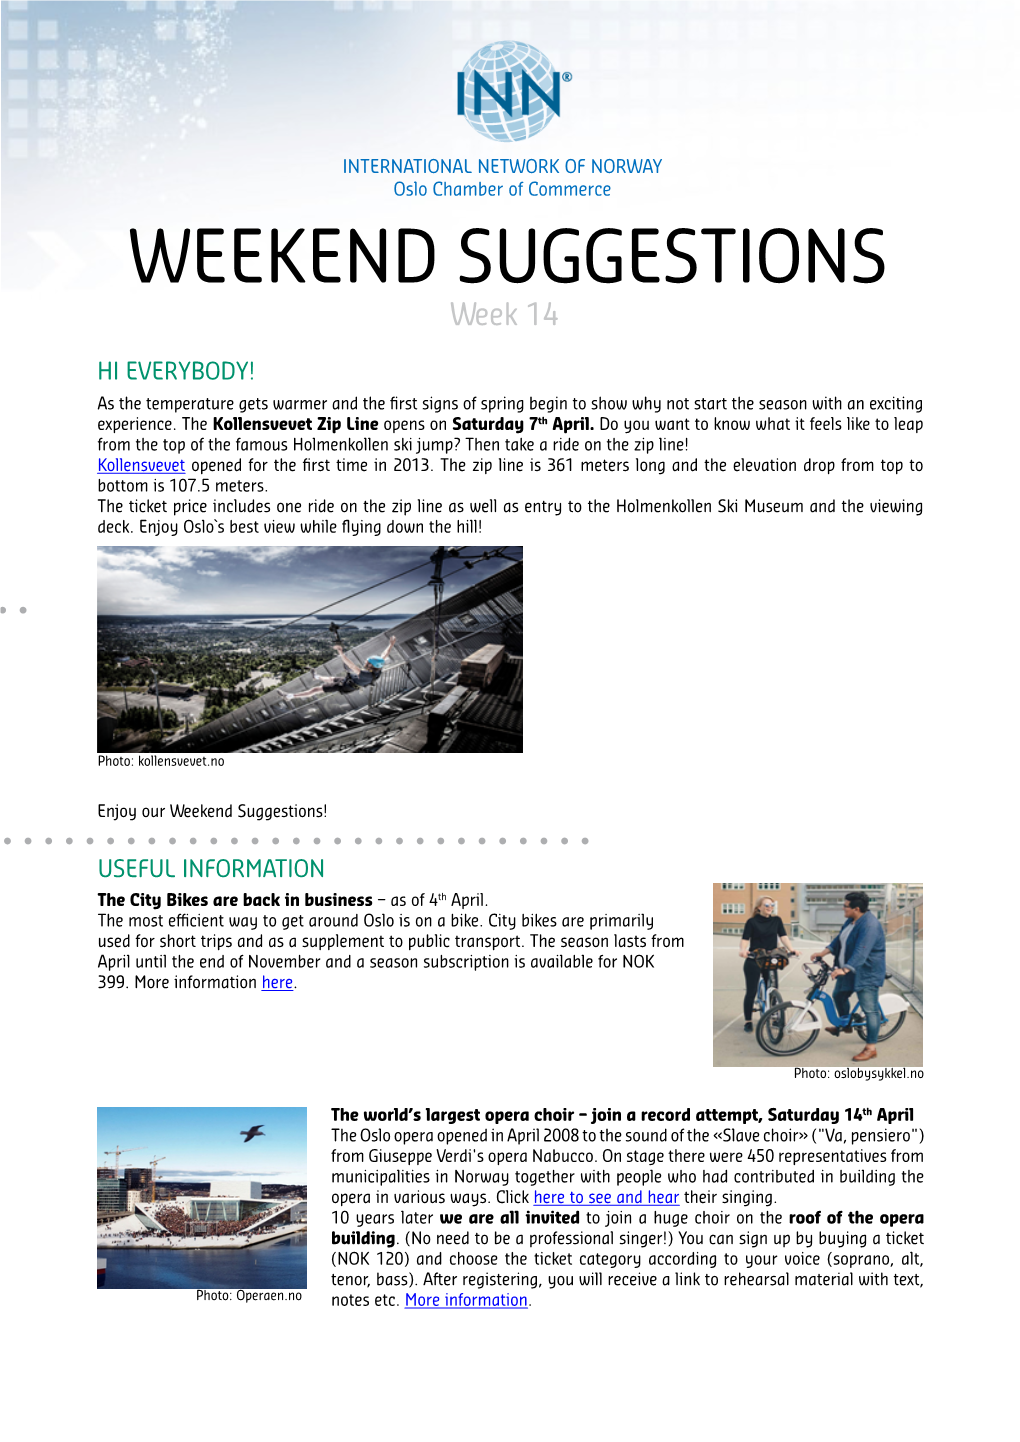 WEEKEND SUGGESTIONS Week 14